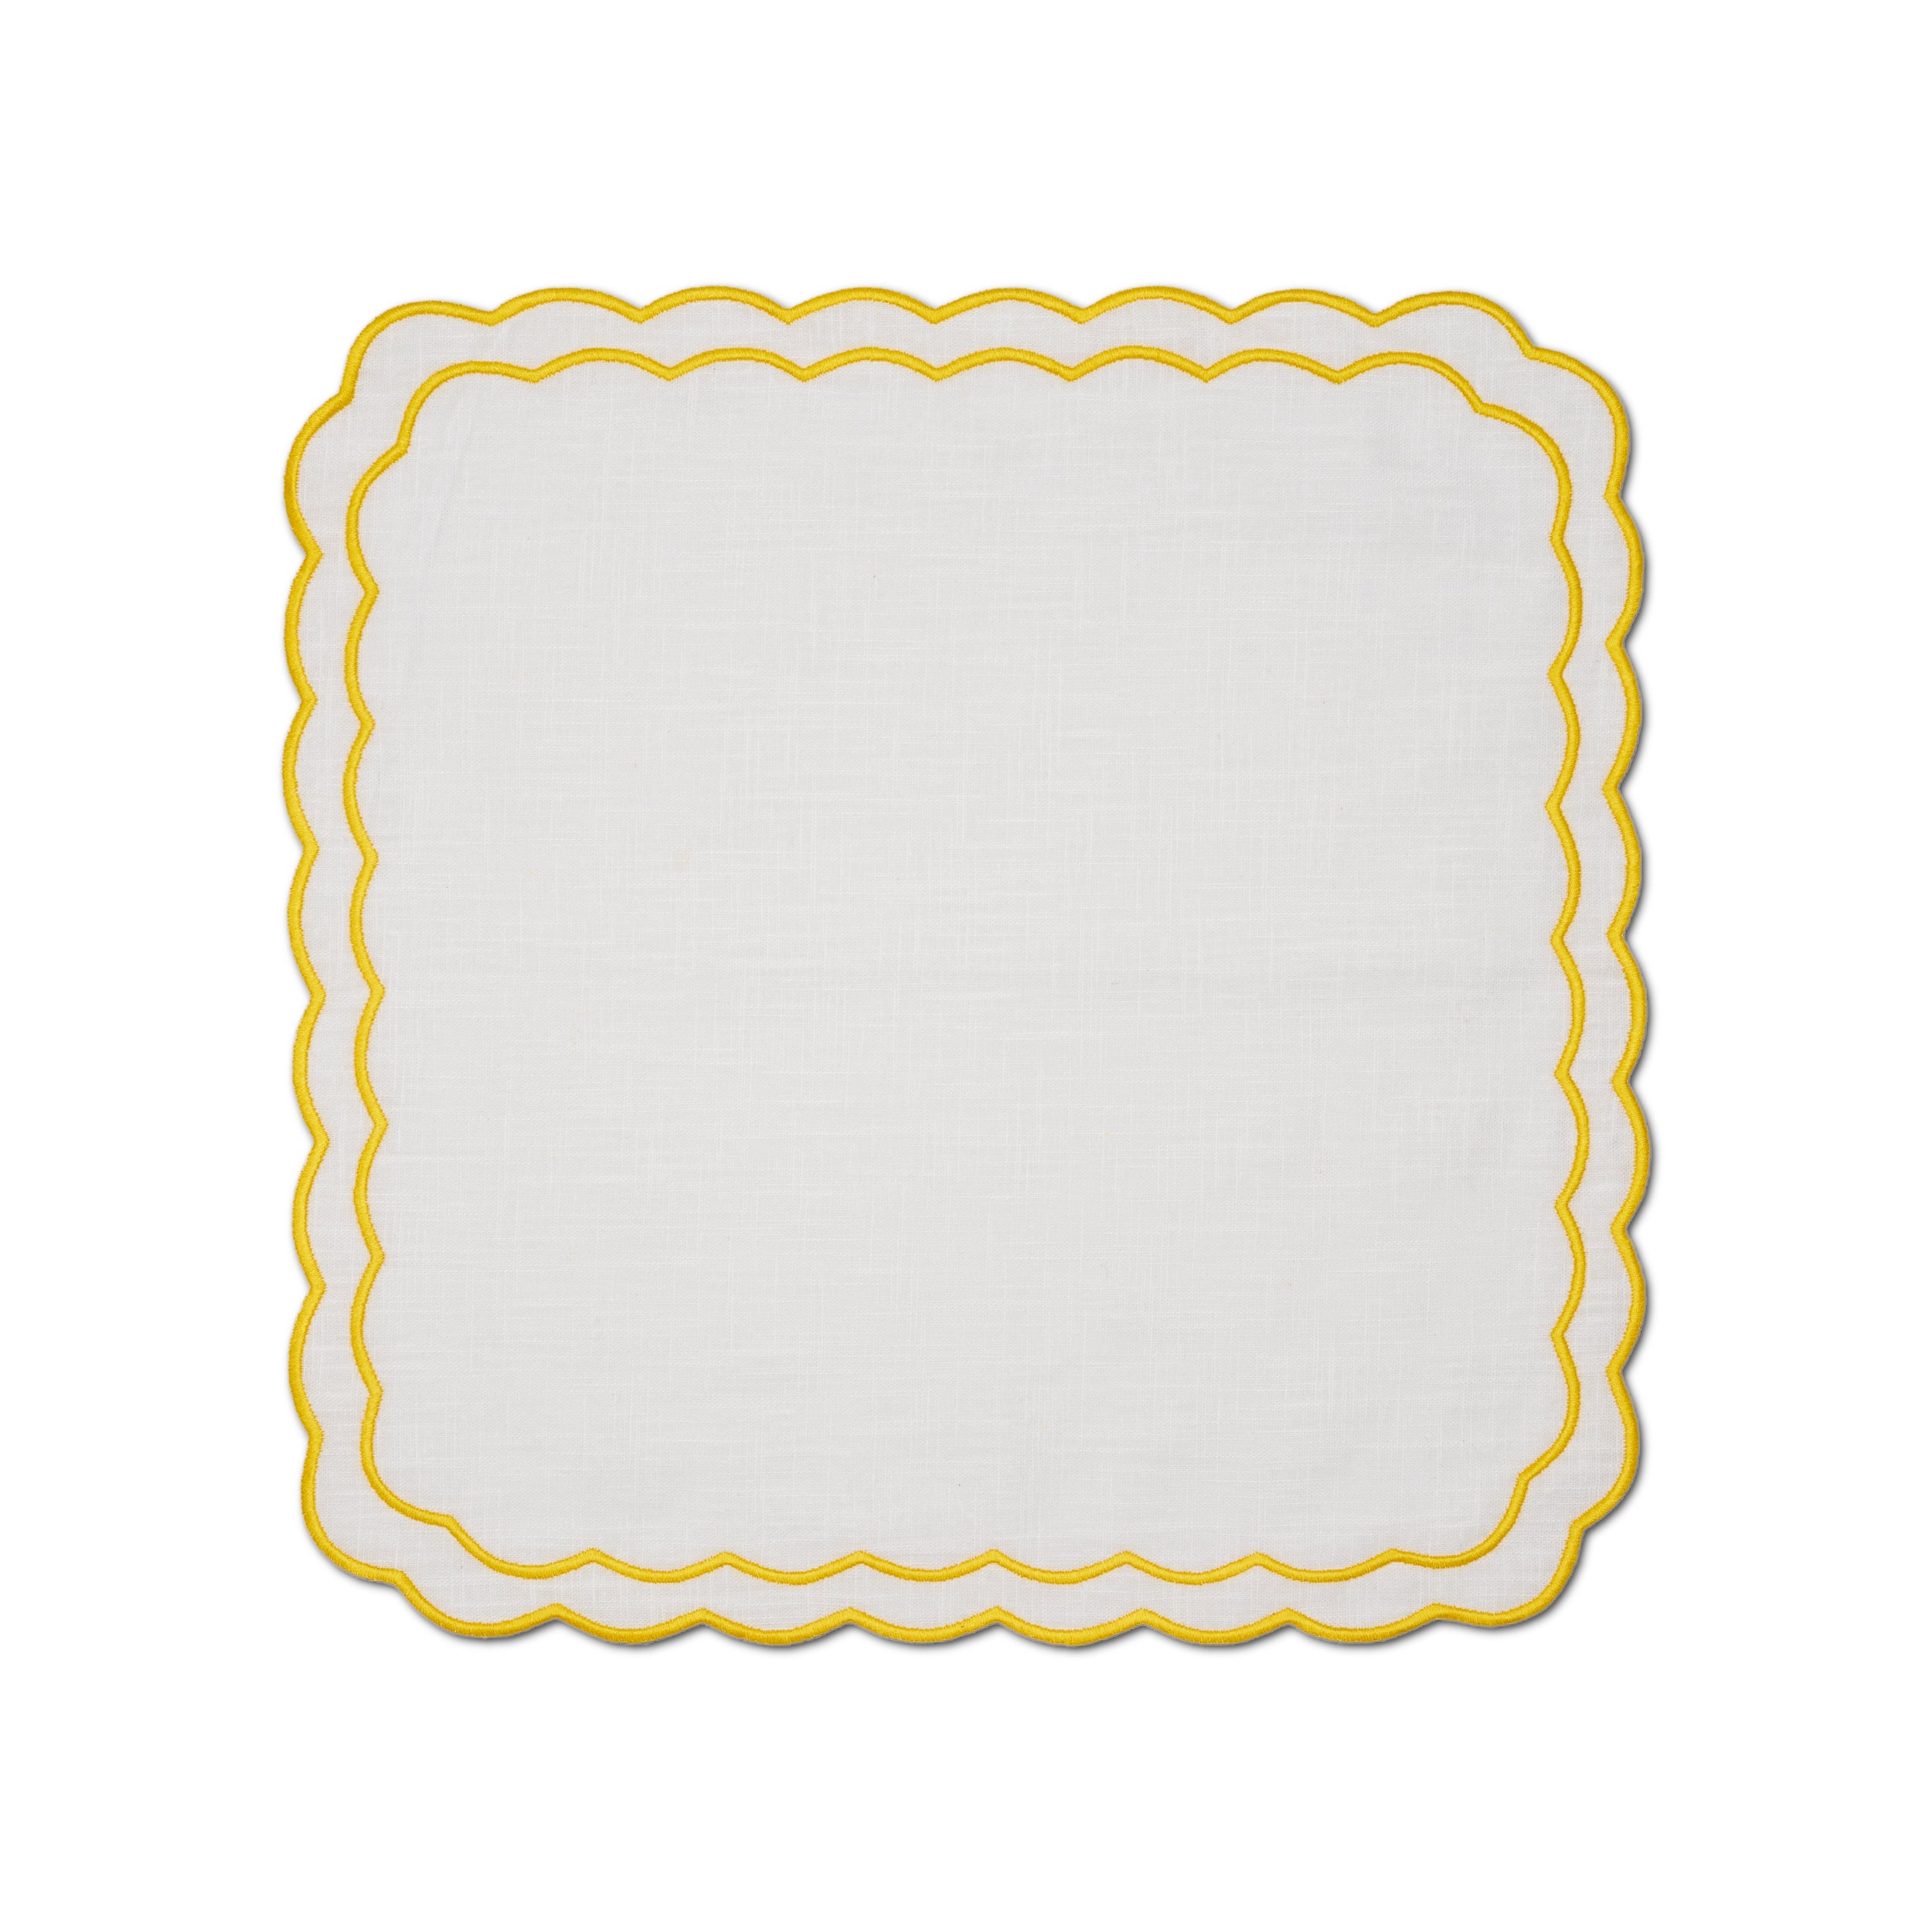 Marigold Napkin | White with Yellow - set of 4